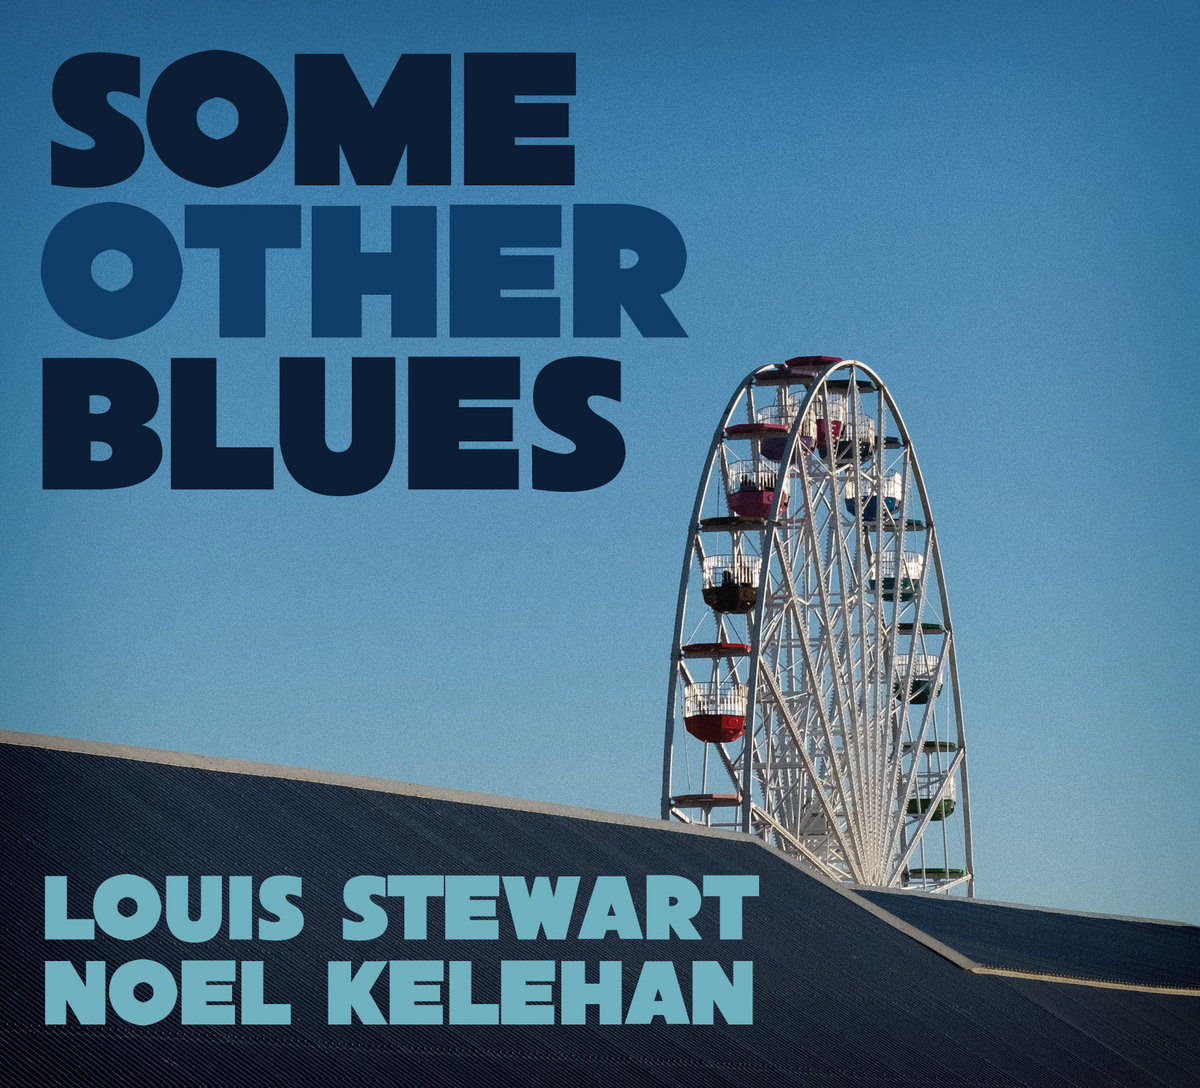 SOME OTHER BLUES, Louis Stewart Noel Kelehan